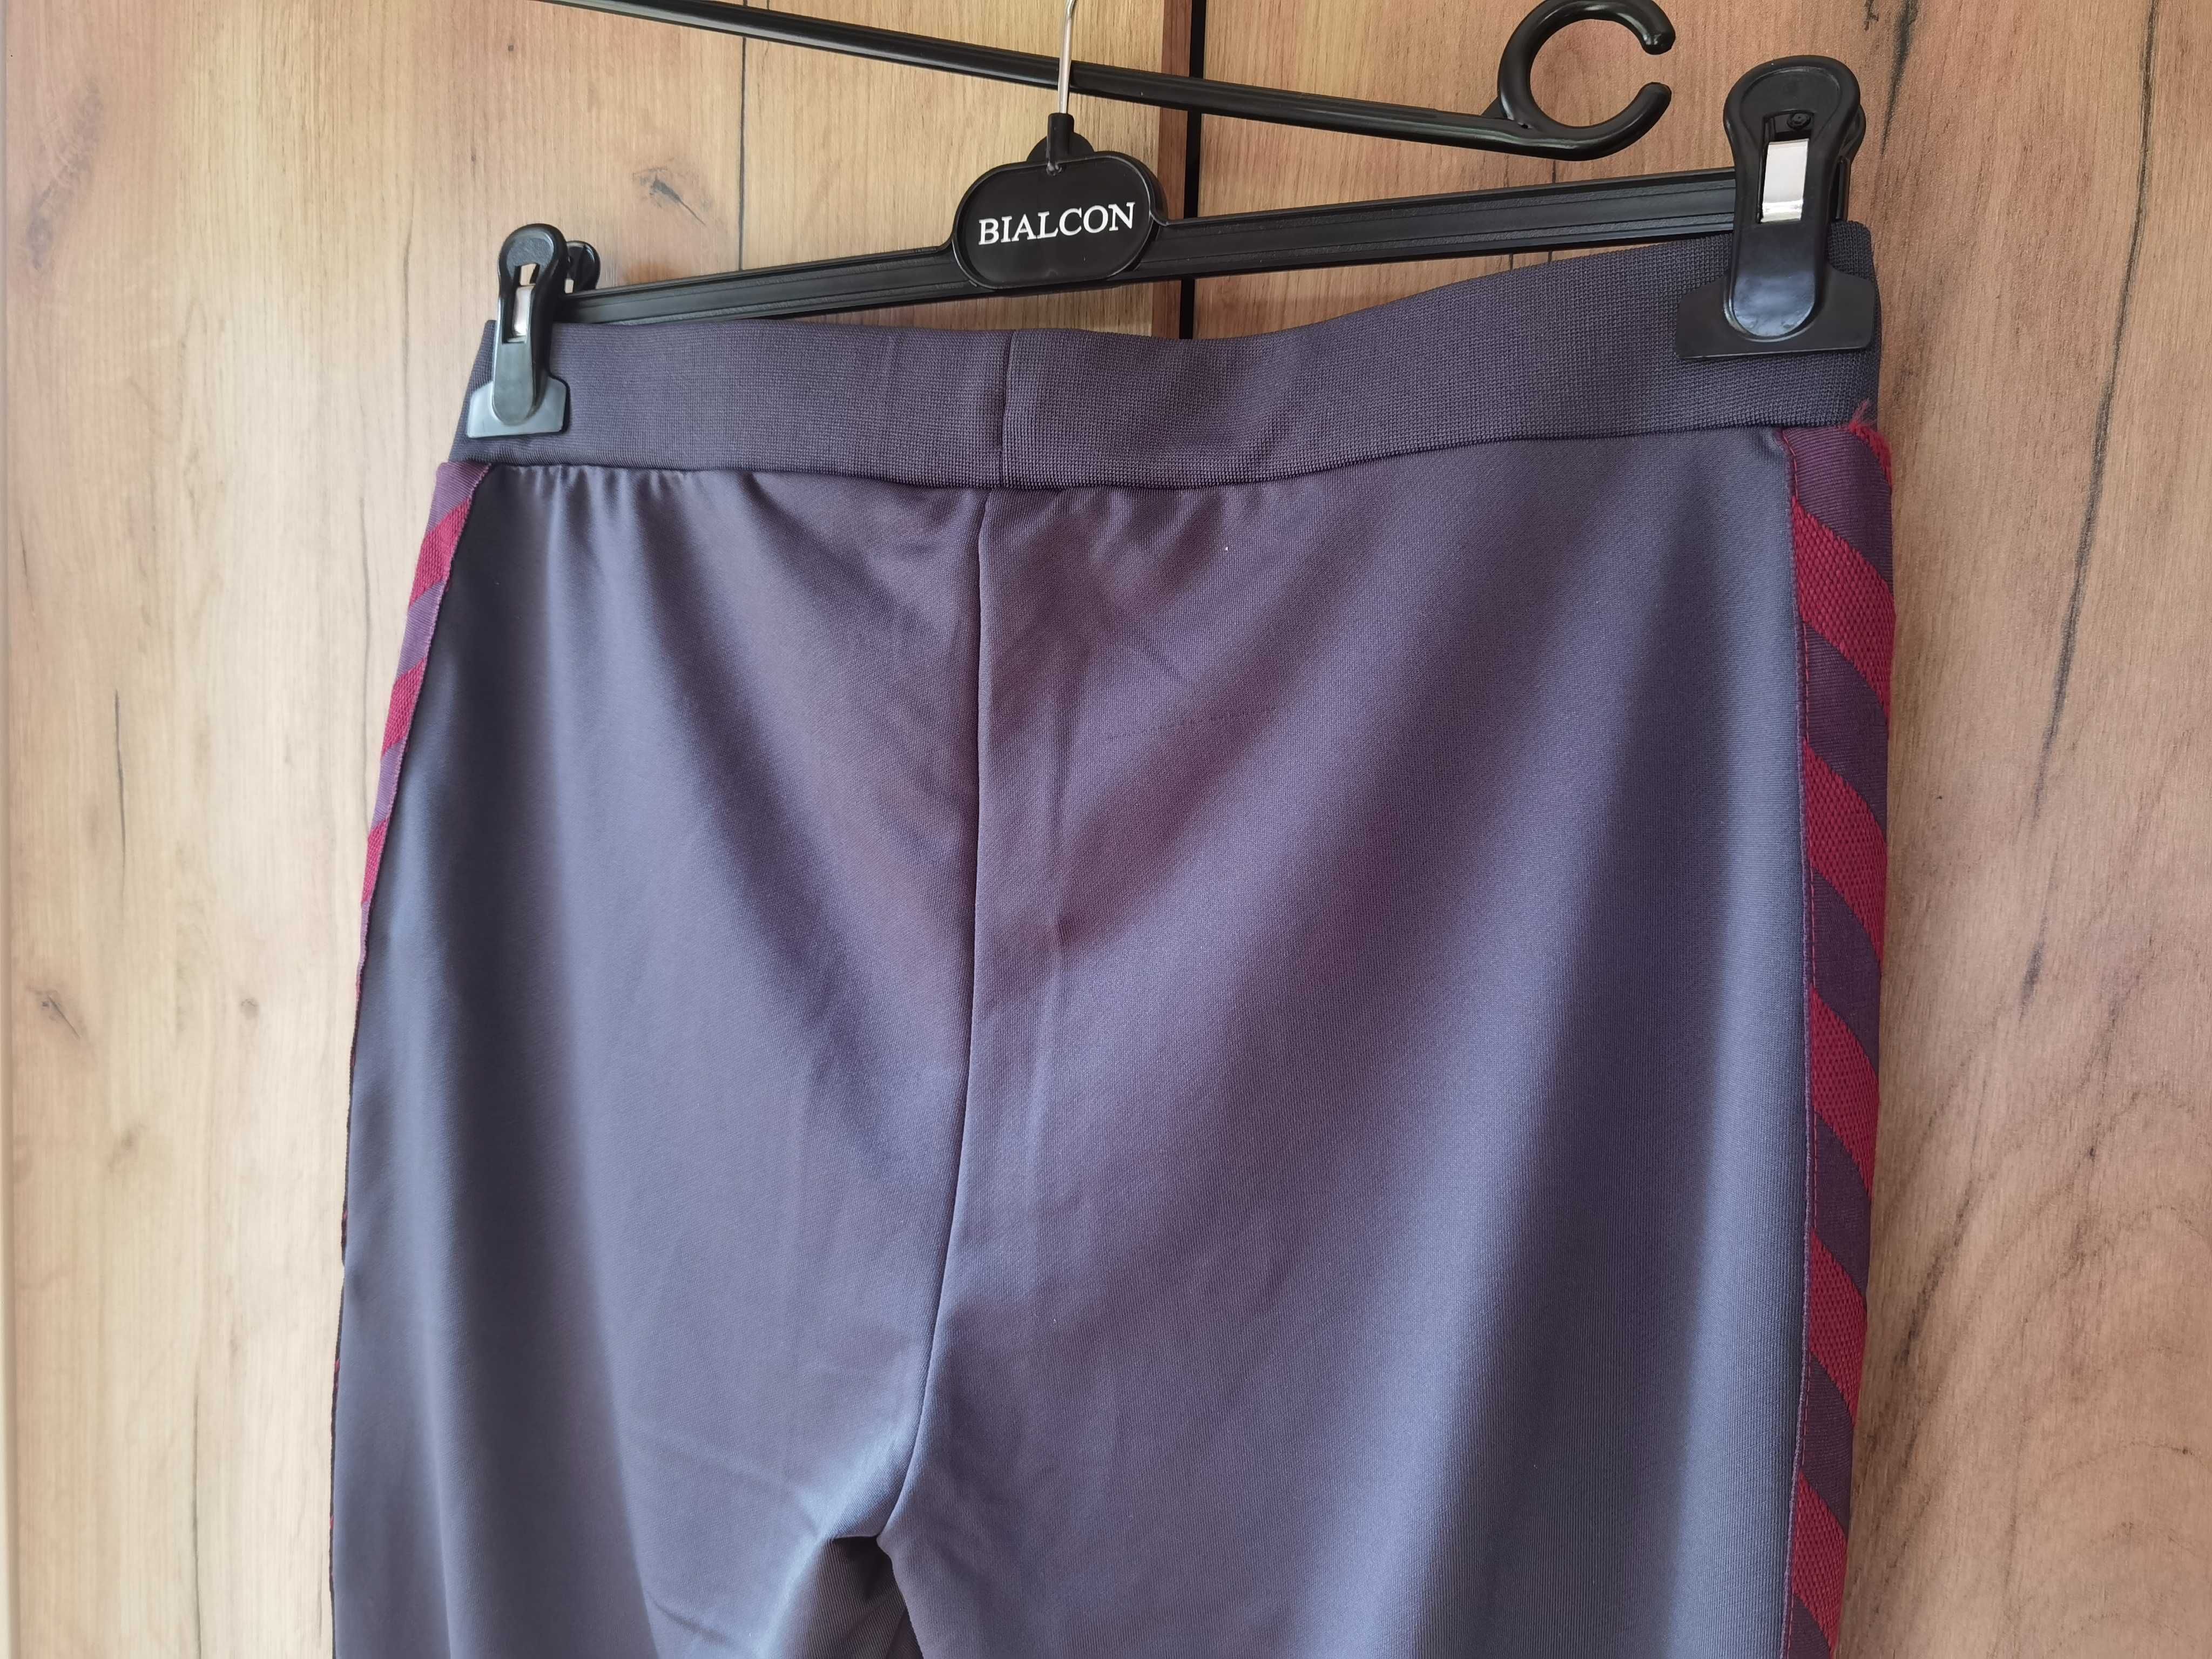 Spodnie sportowe Hummel, rozmiar M, damskie, nowe z metką, kieszenie